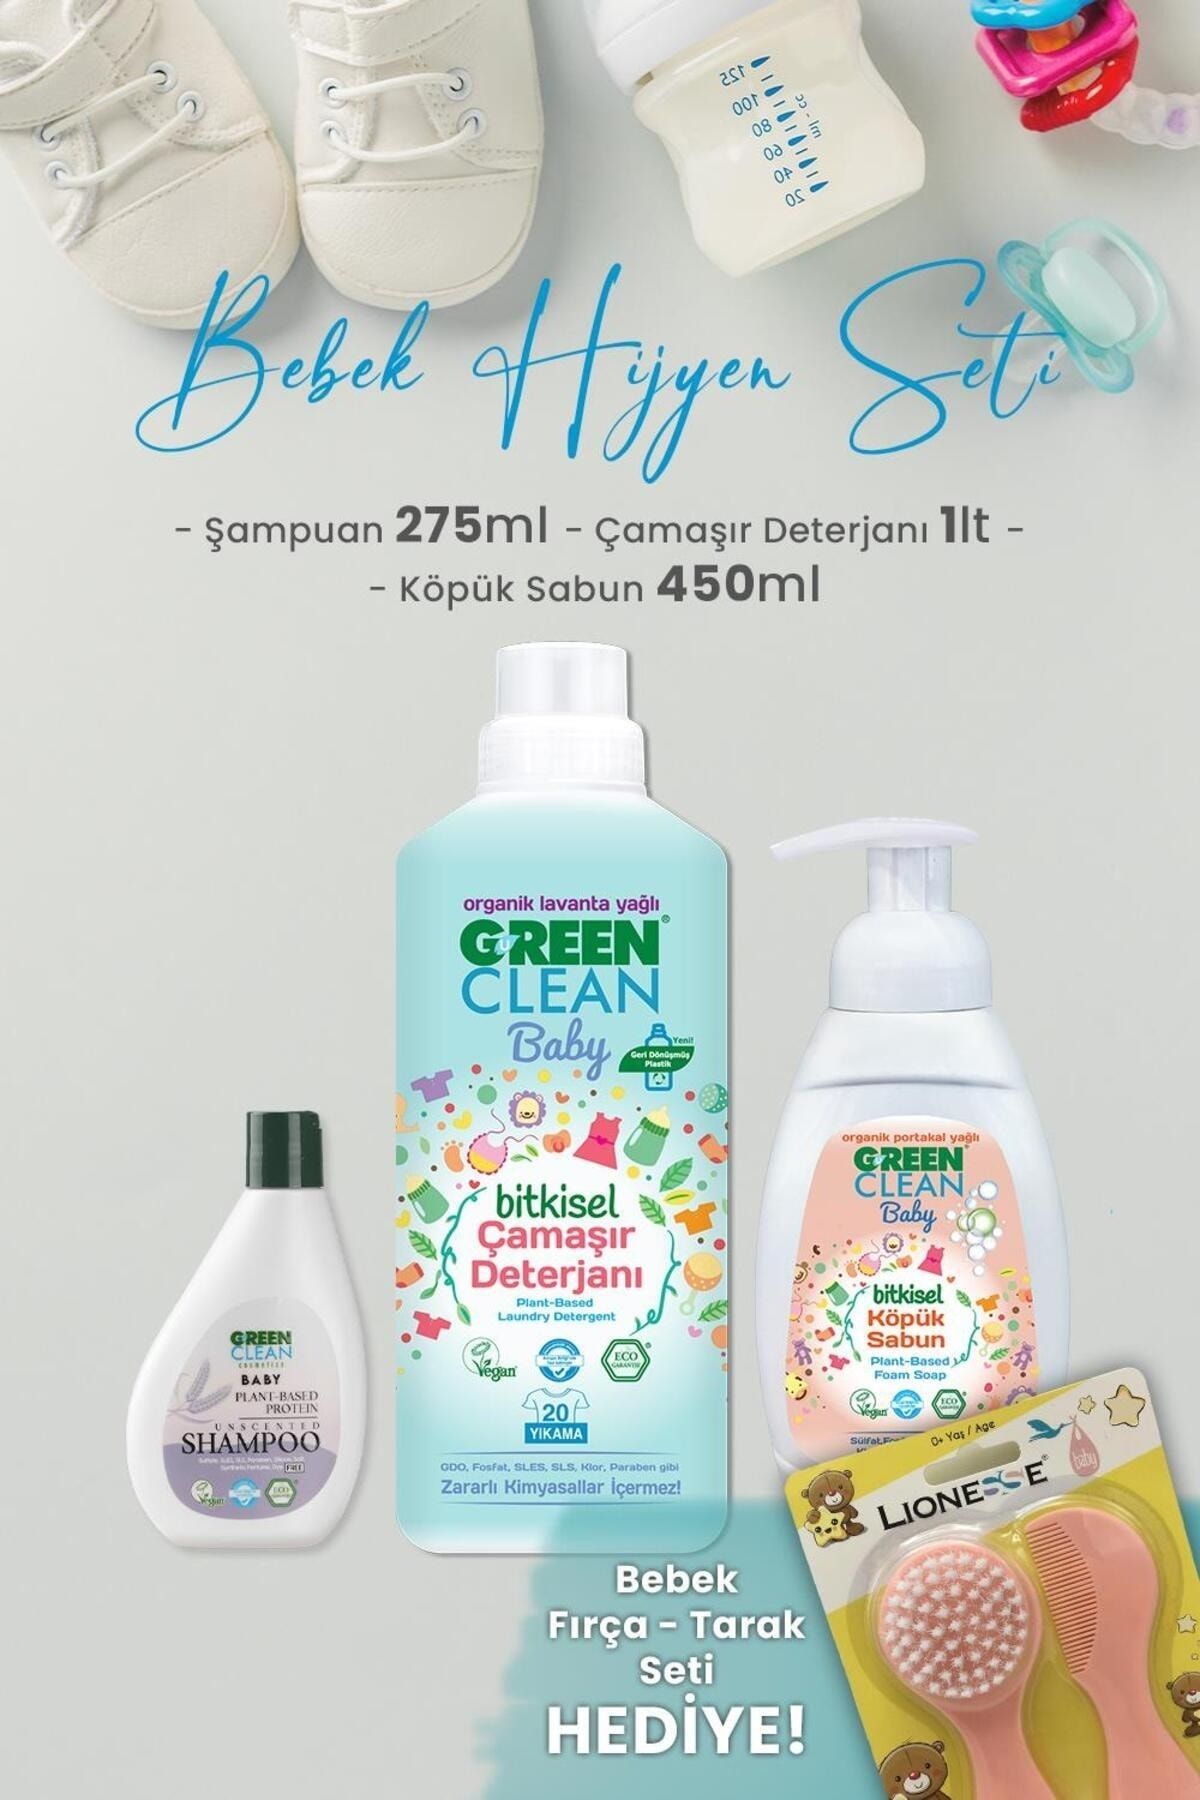 Green Clean U Green Clean Baby Çamaşır Deterjanı, Köpük Sabun , Şampuan ve Hediyeli